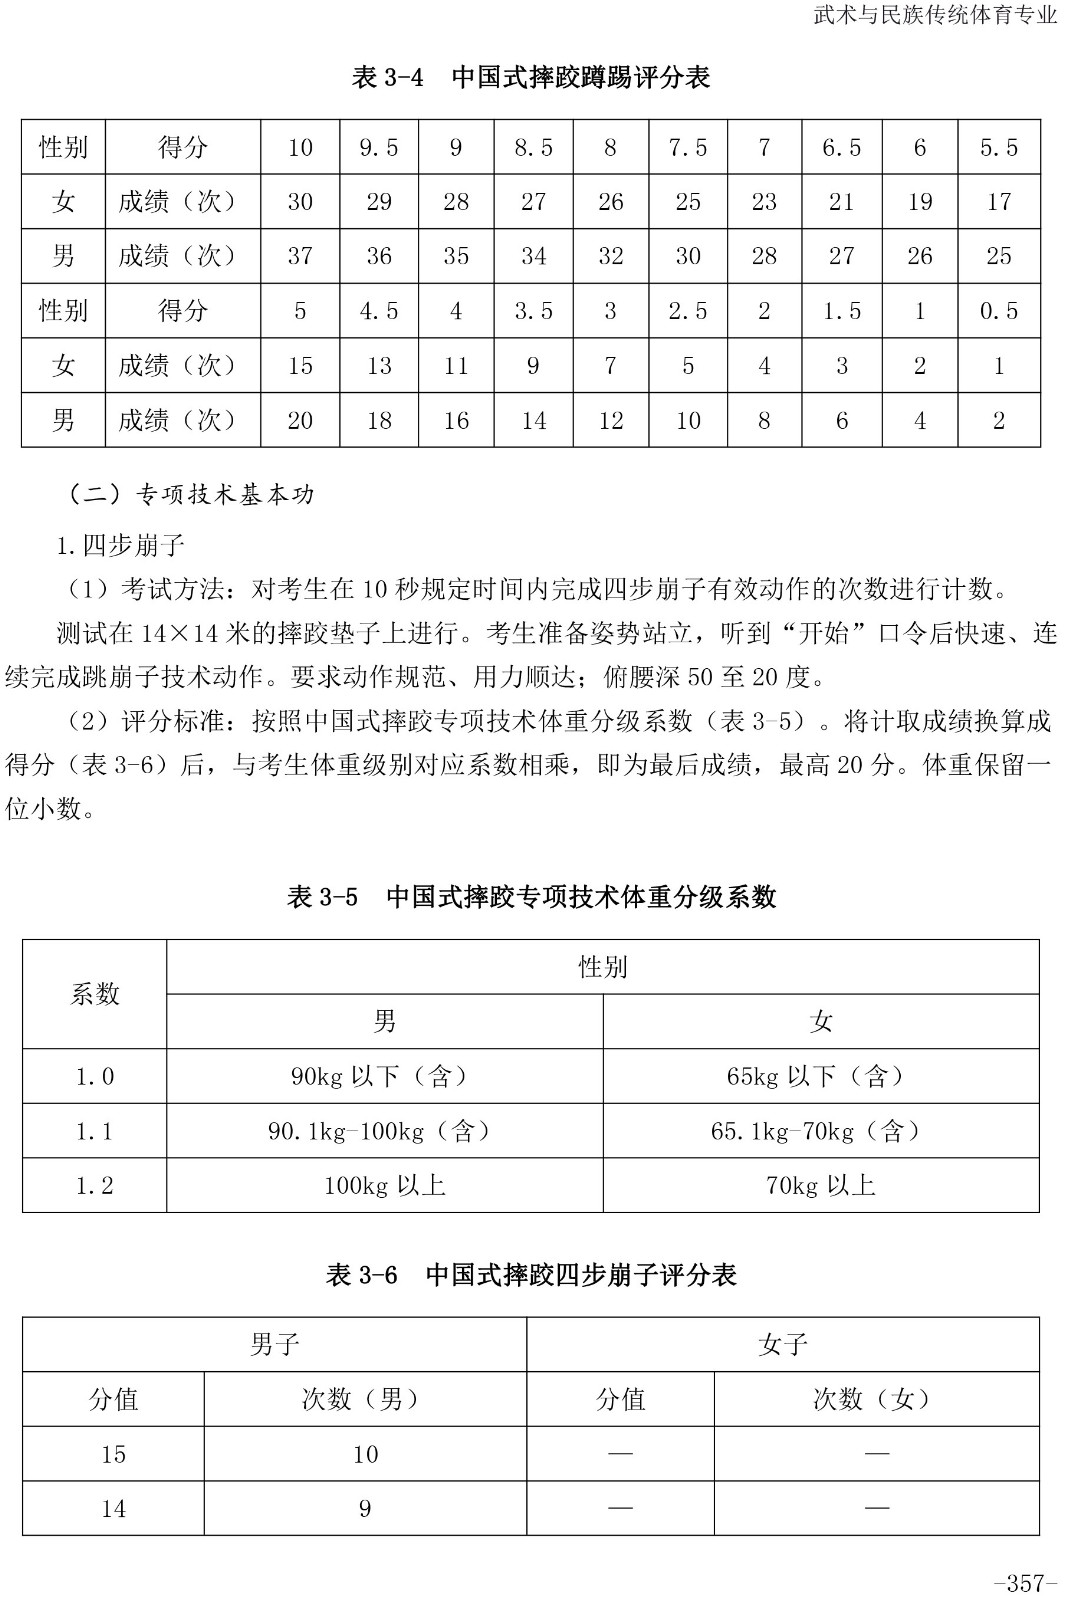 2020年体育单招专项（中国式摔跤）考试与评分标准